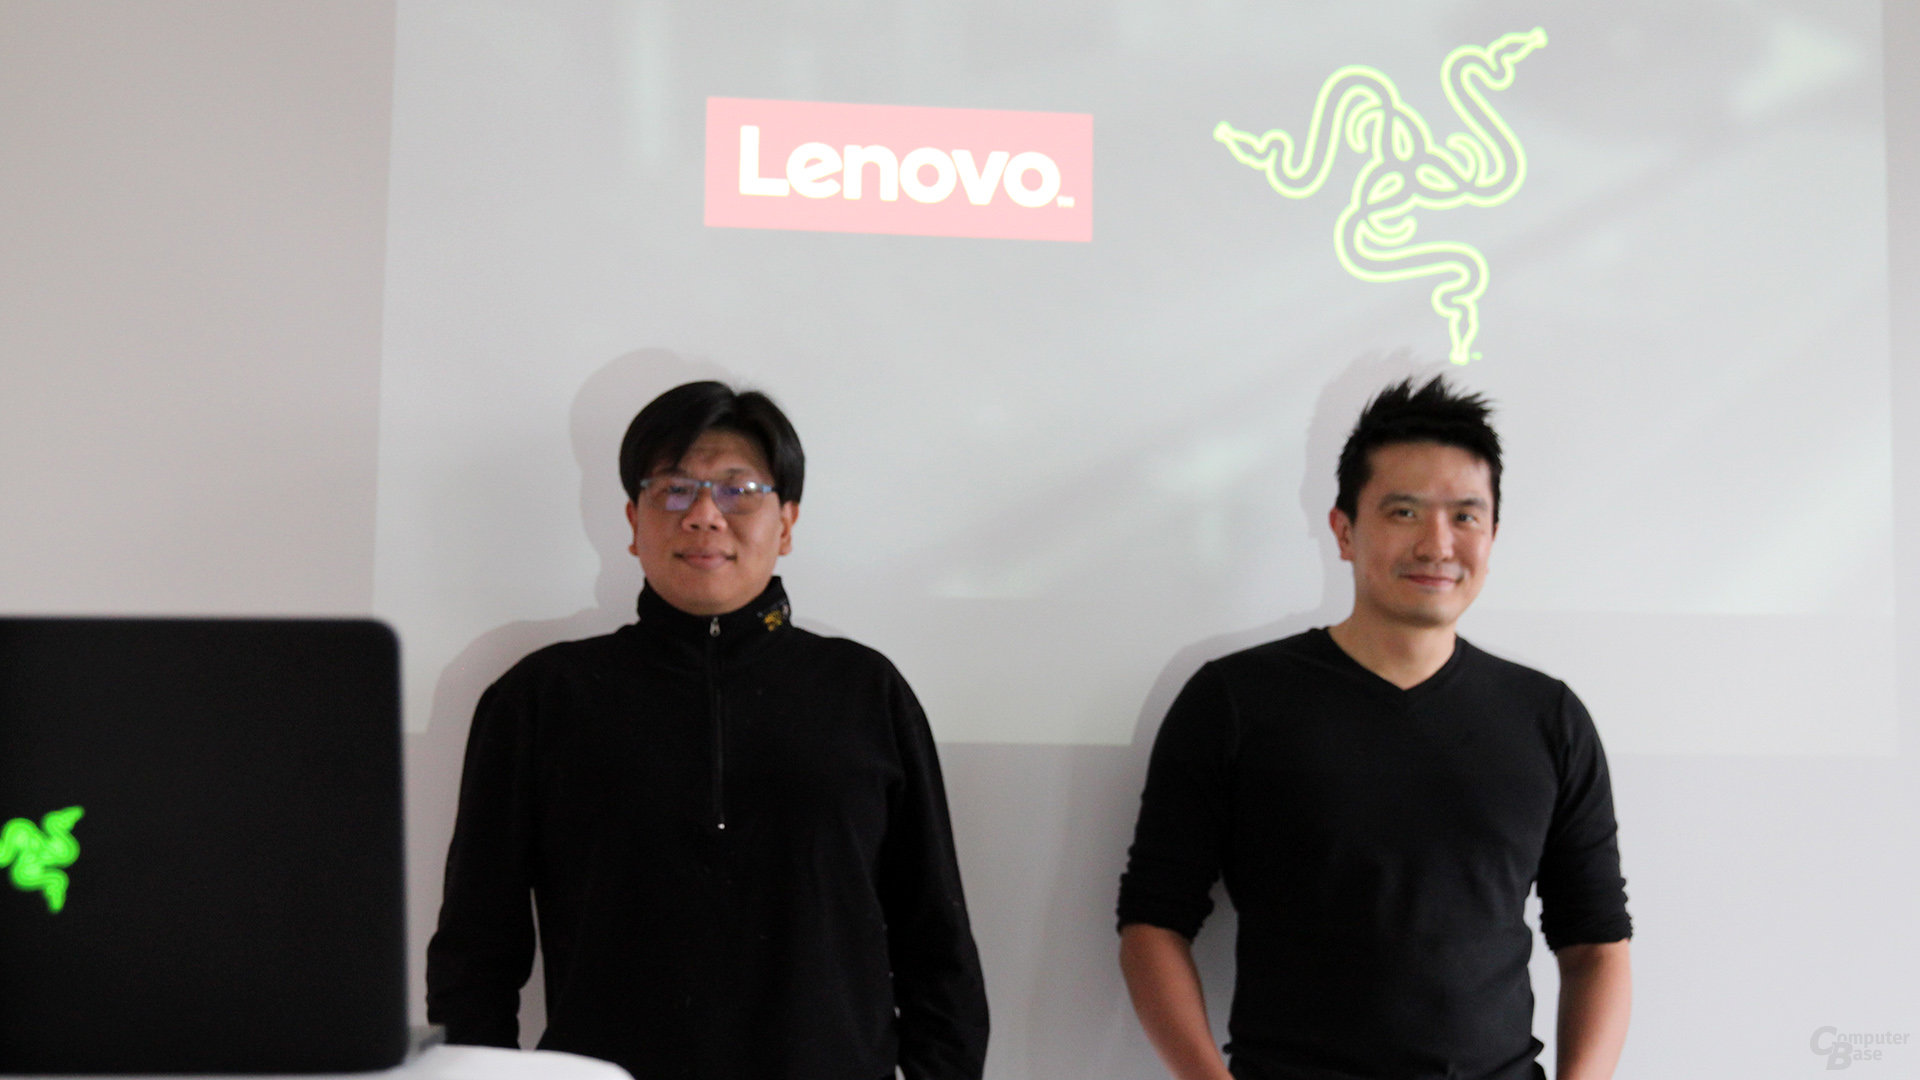 Lenovos Melvin Teo, Razer CEO Min-Liang Tan